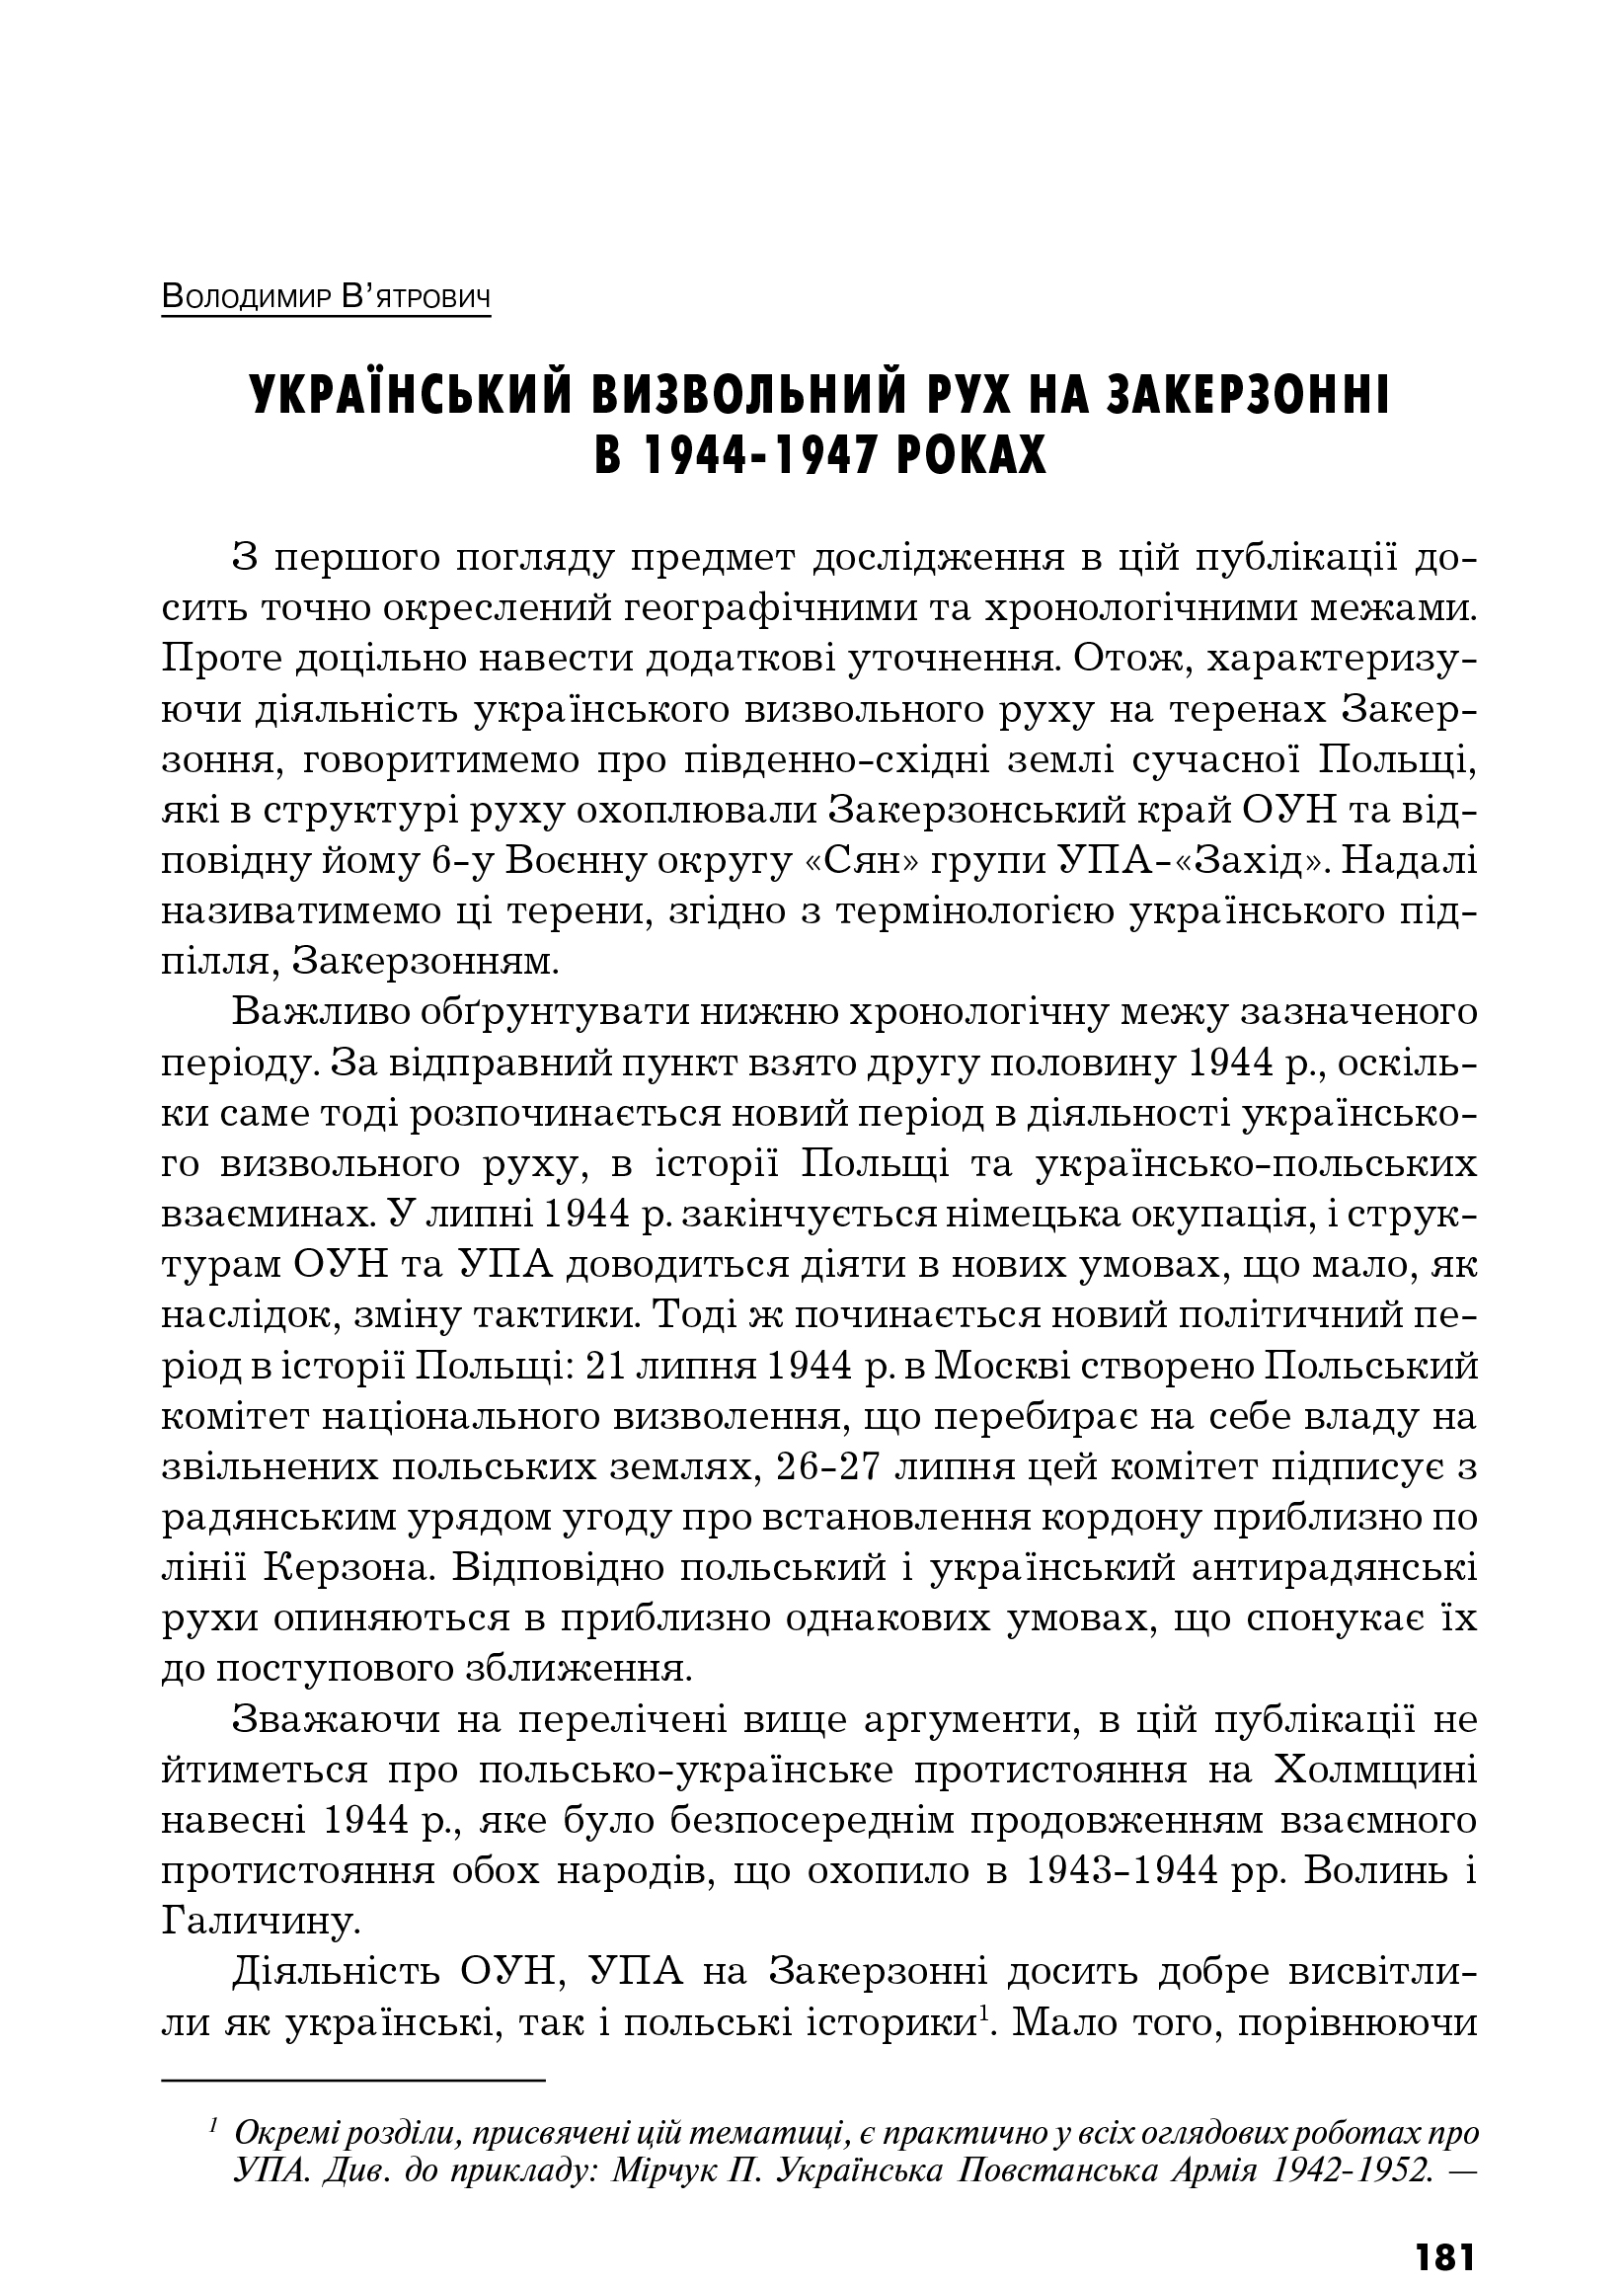 Український визвольний рух №12, ст. 181 - 196